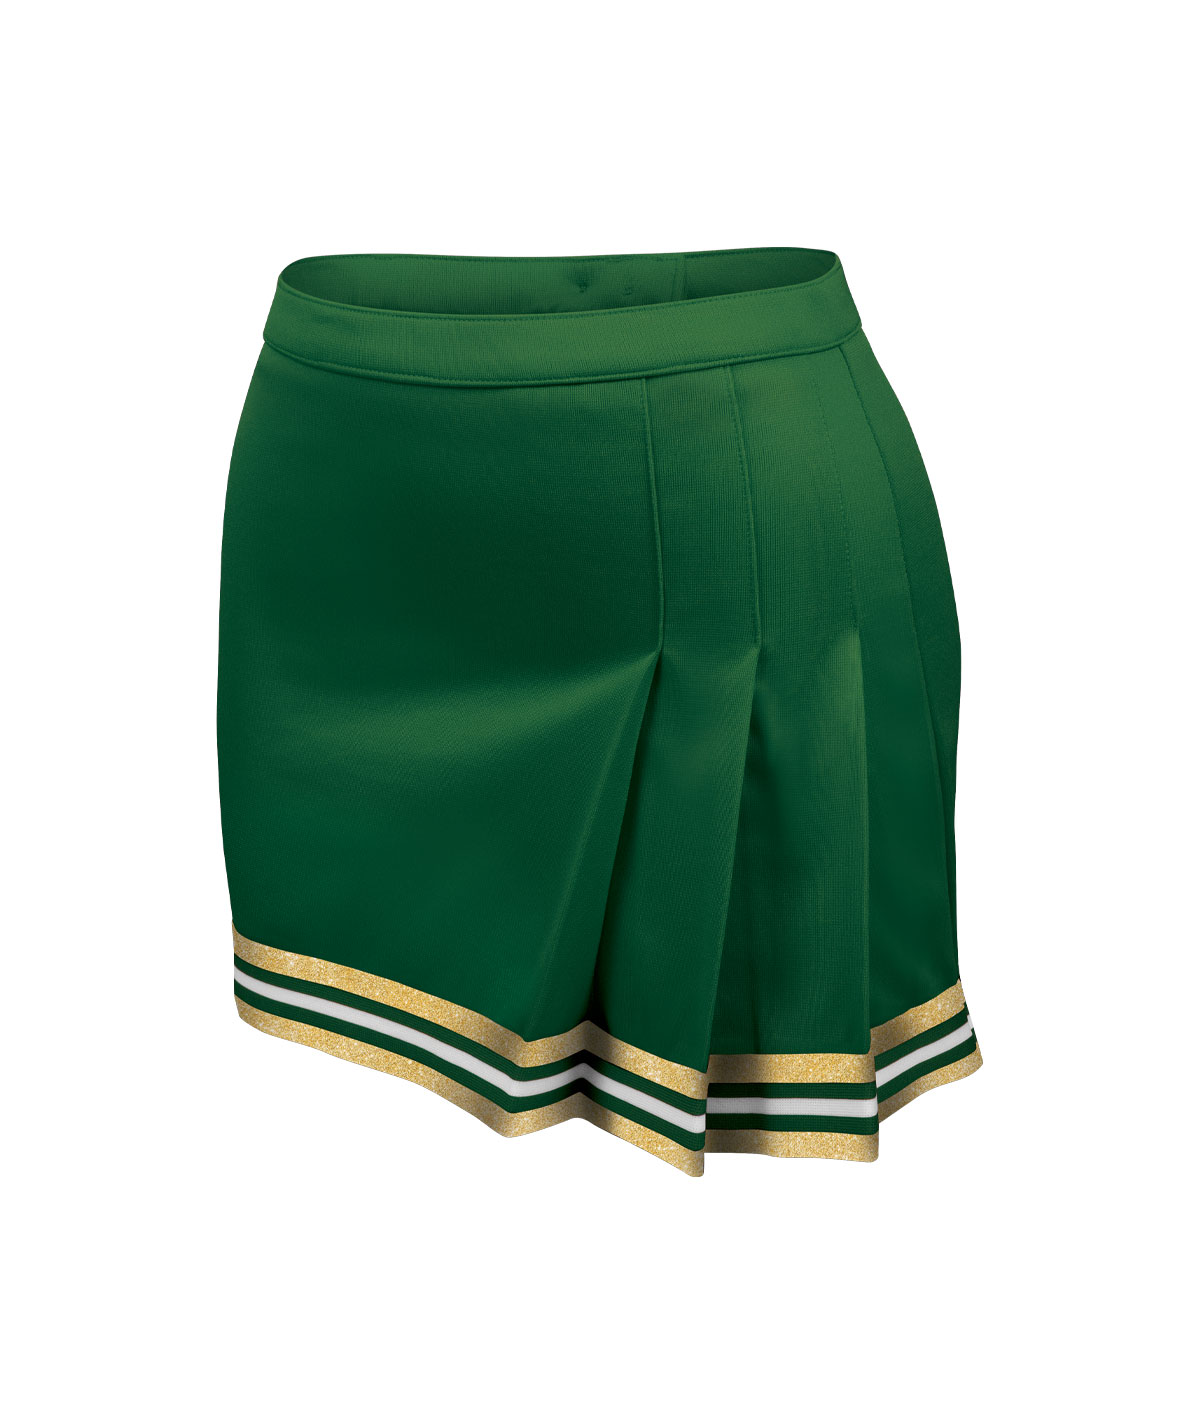 GK Sideline Premier Skirt 2.0